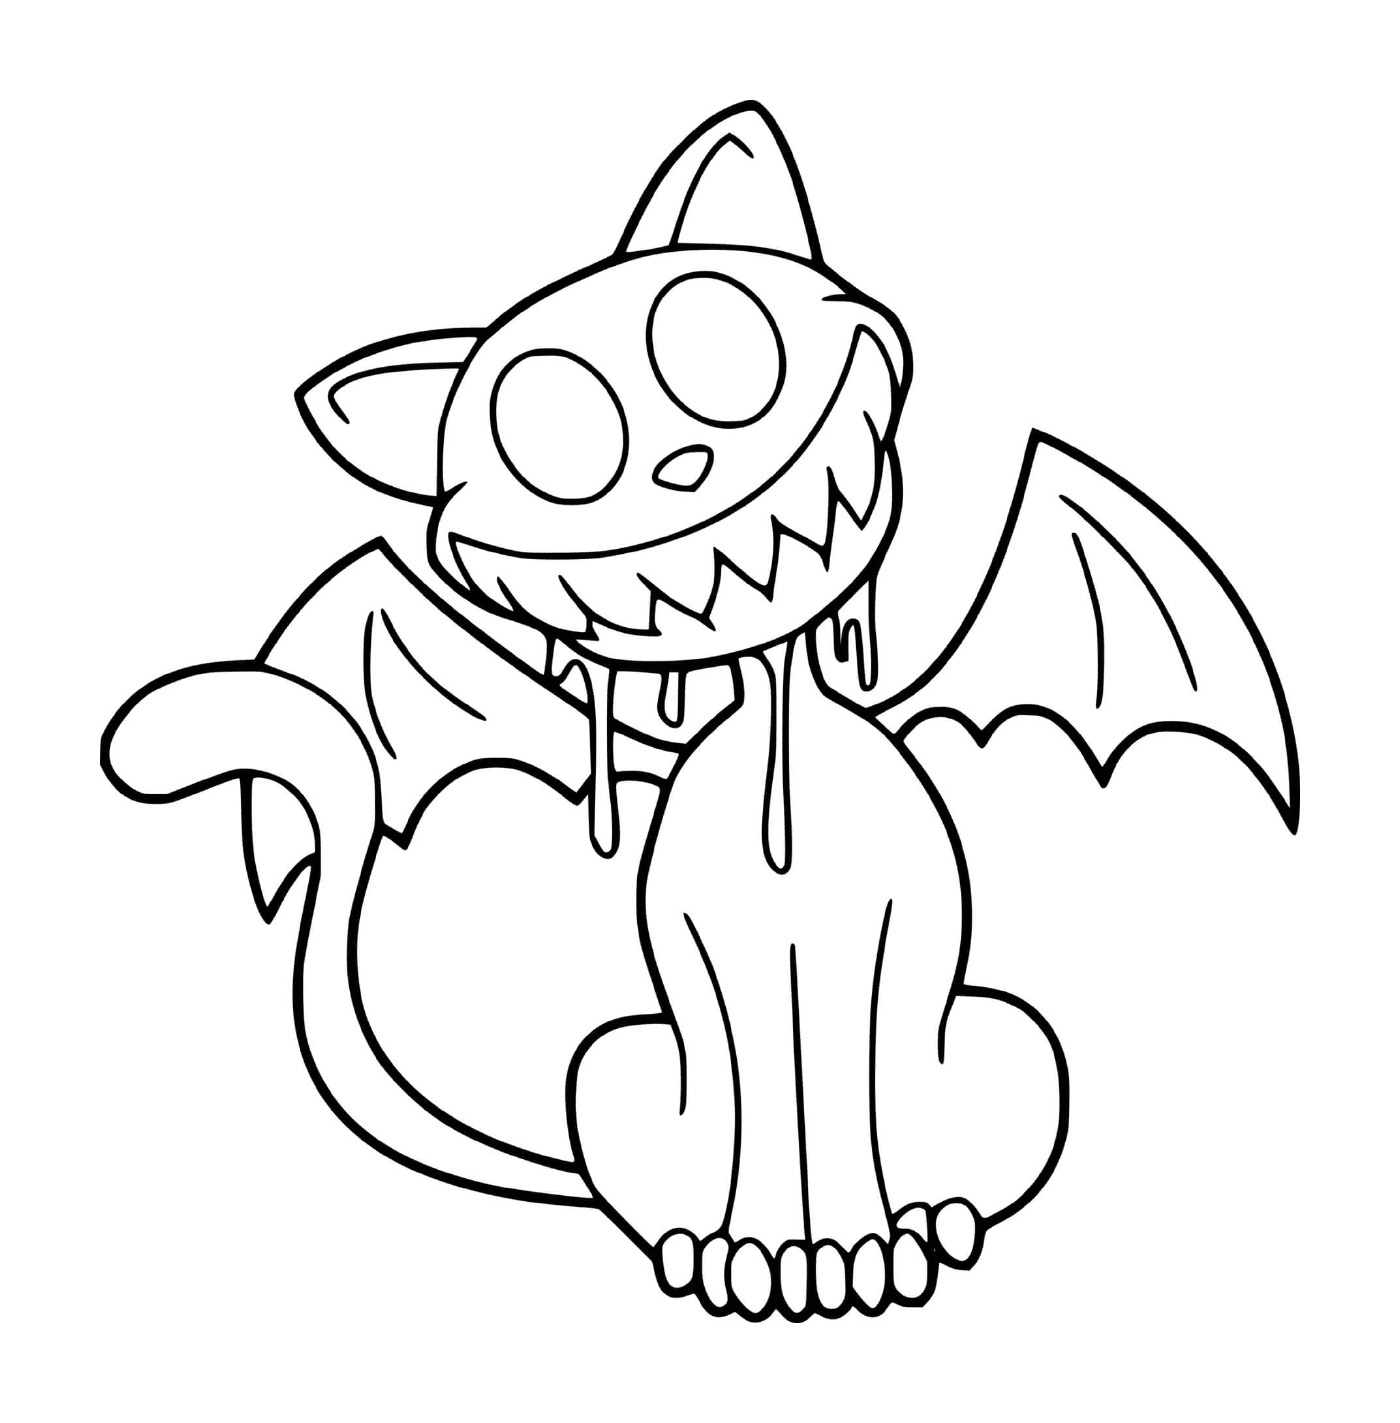  Gato disfarçado de morcego assustador 